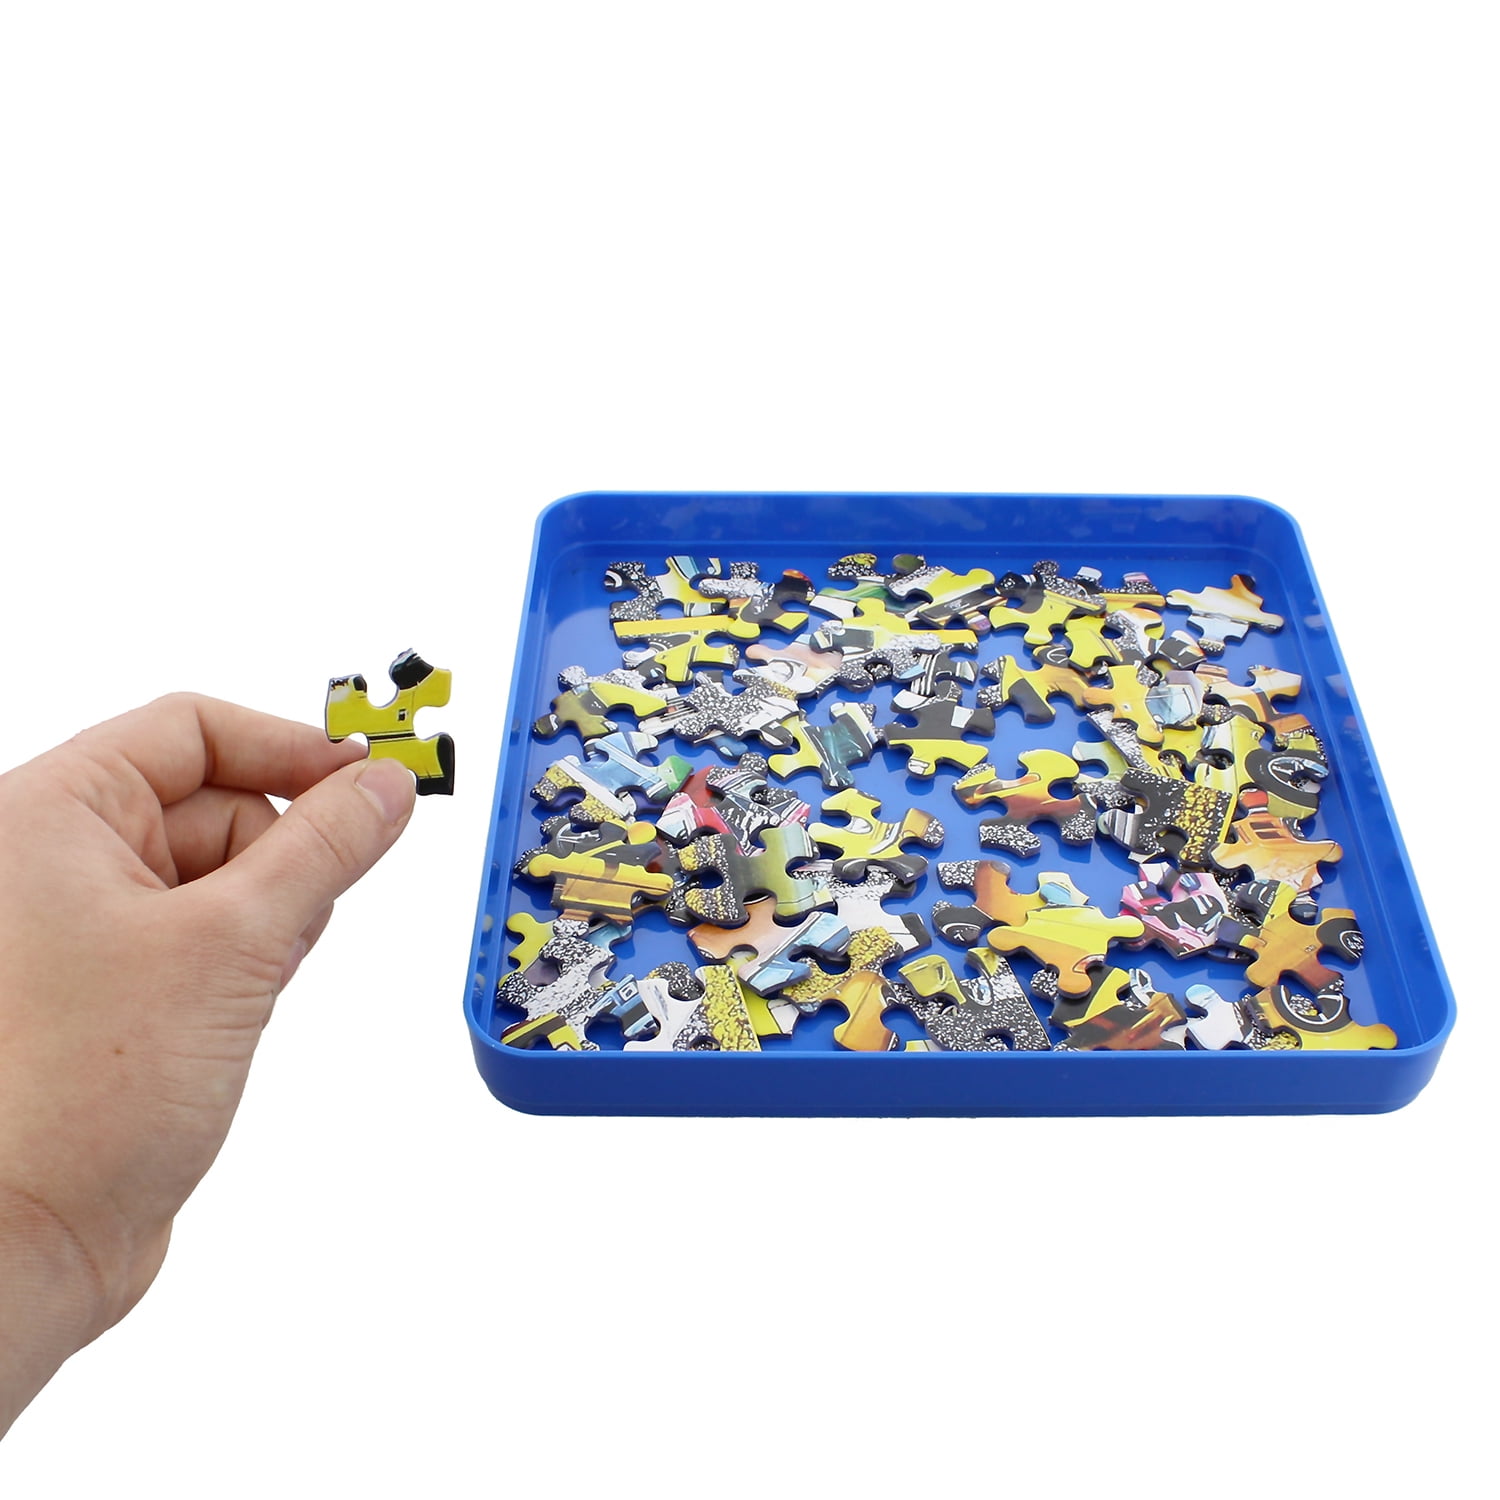 Jigsaw Puzzle Organizer Storage Portable Trays